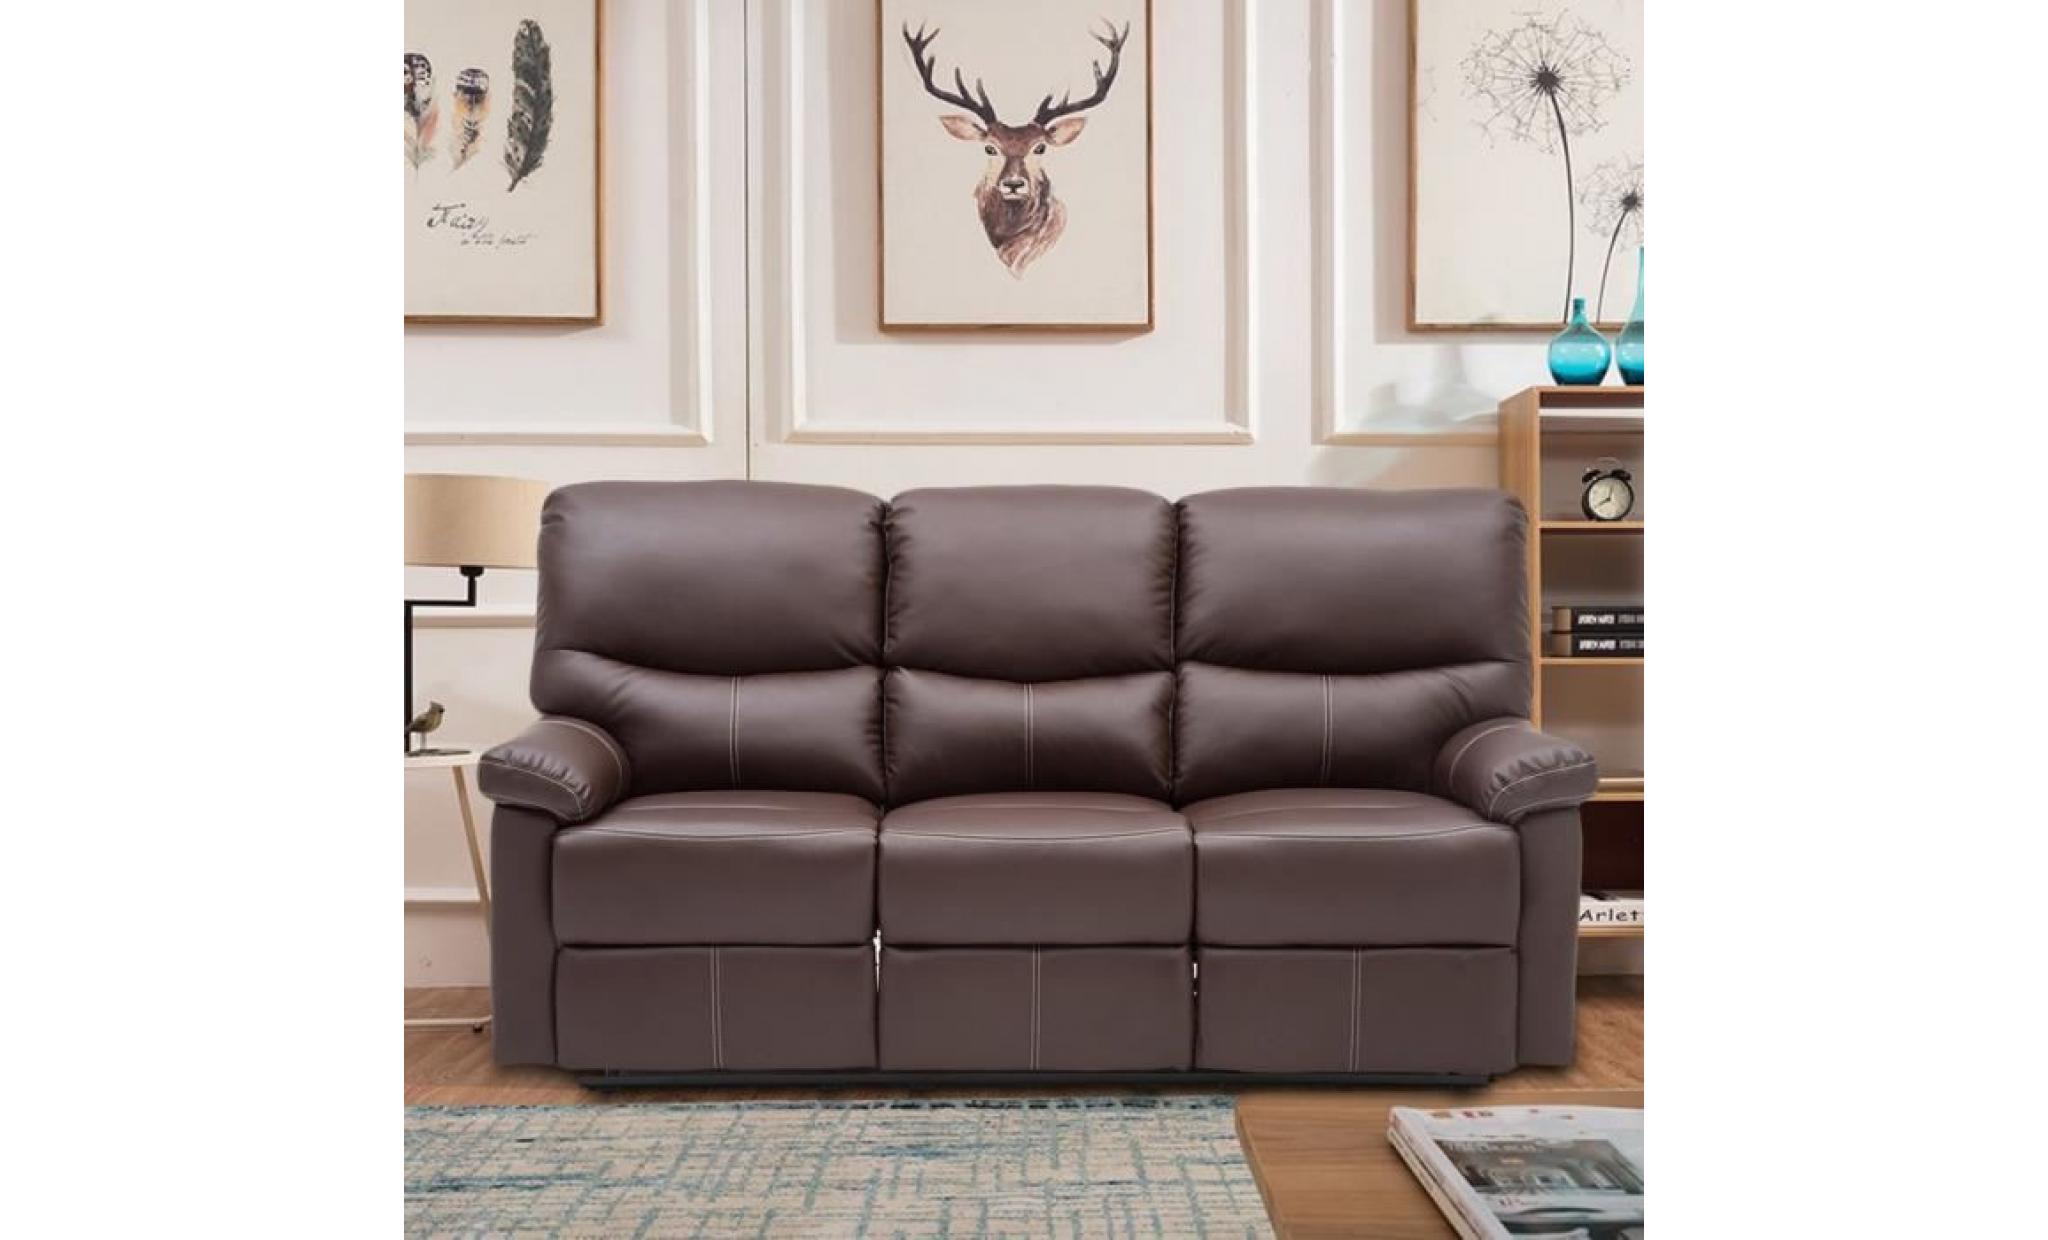 trois siège sofa canapé confortable fauteuil de bureau fauteuil scandinave marron